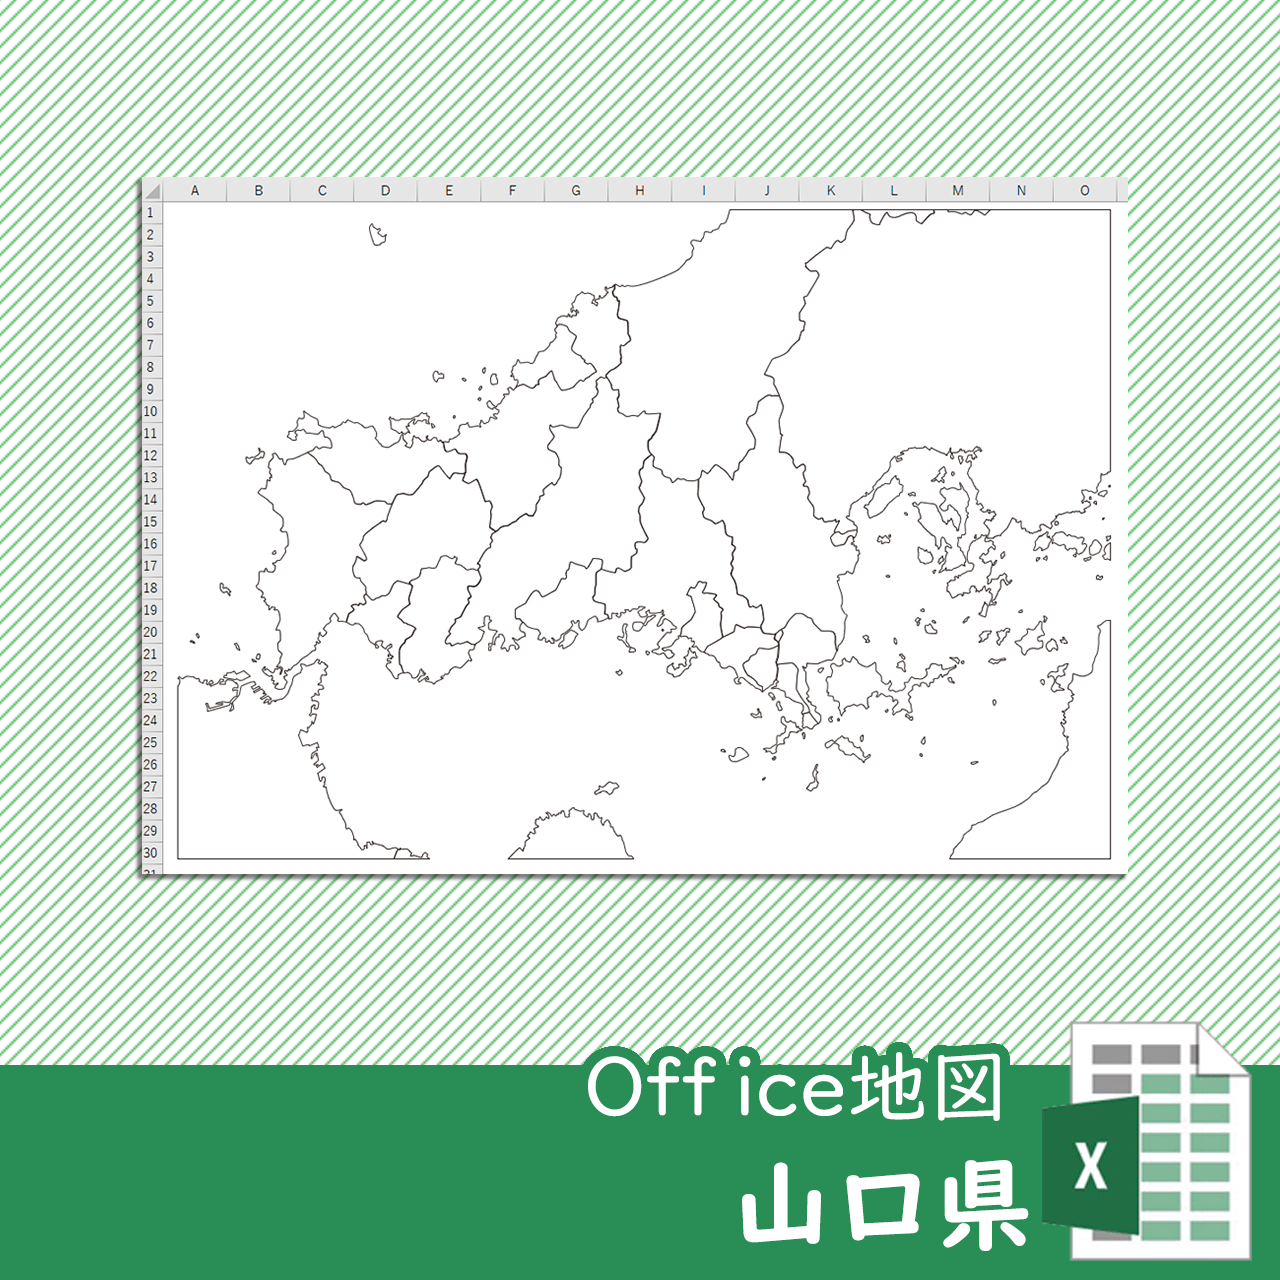 山口県のOffice地図のサムネイル